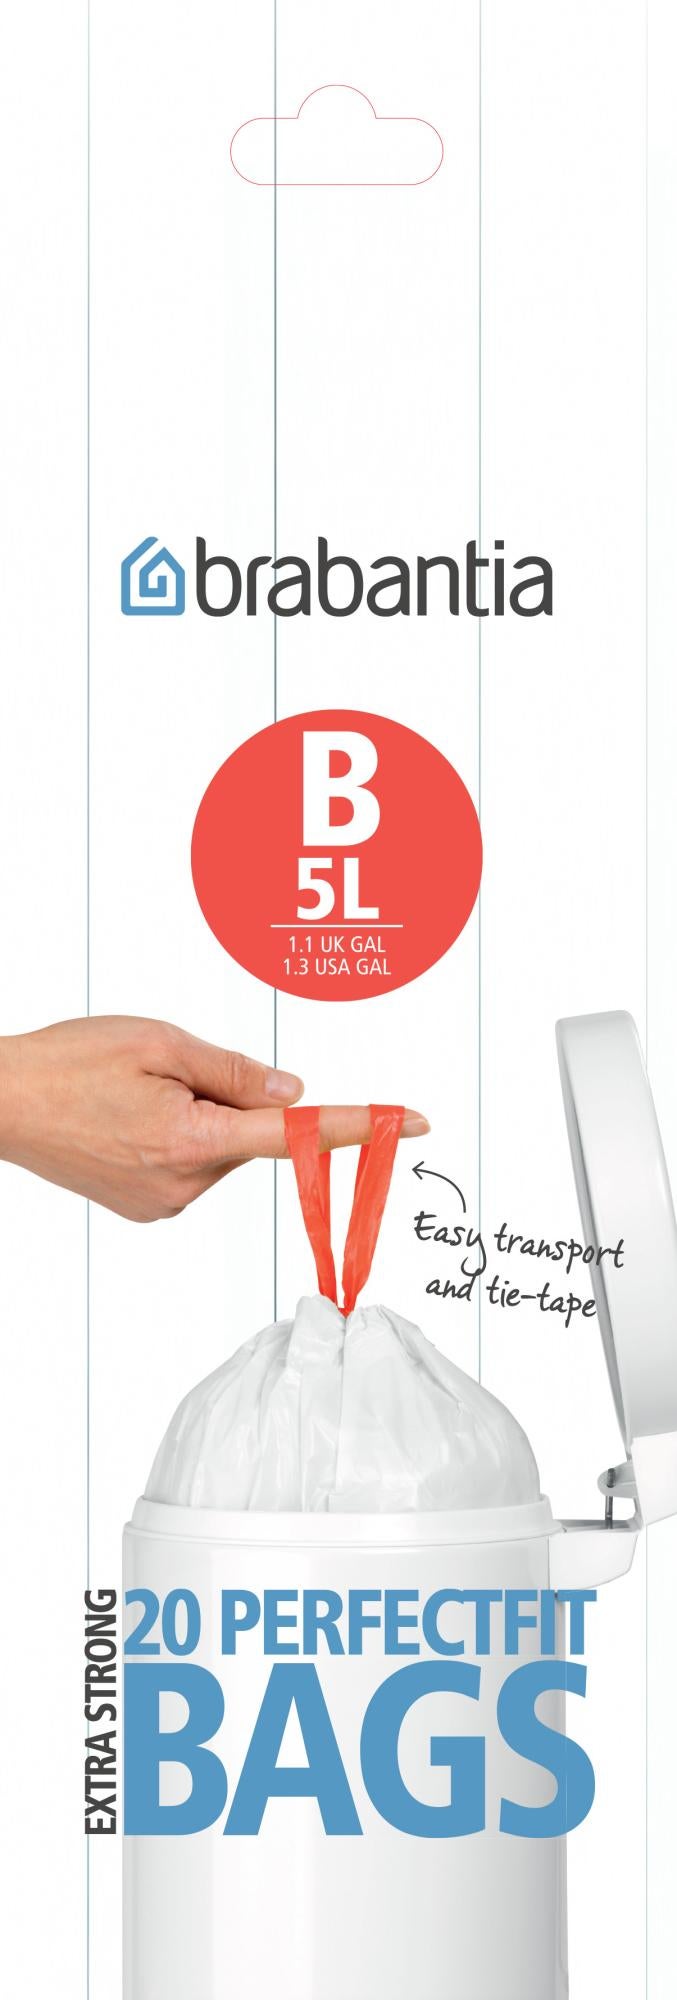 Brabantia Brabantia Poubelle 5 litre B 20bags Blanc – 311741 lot de 6 